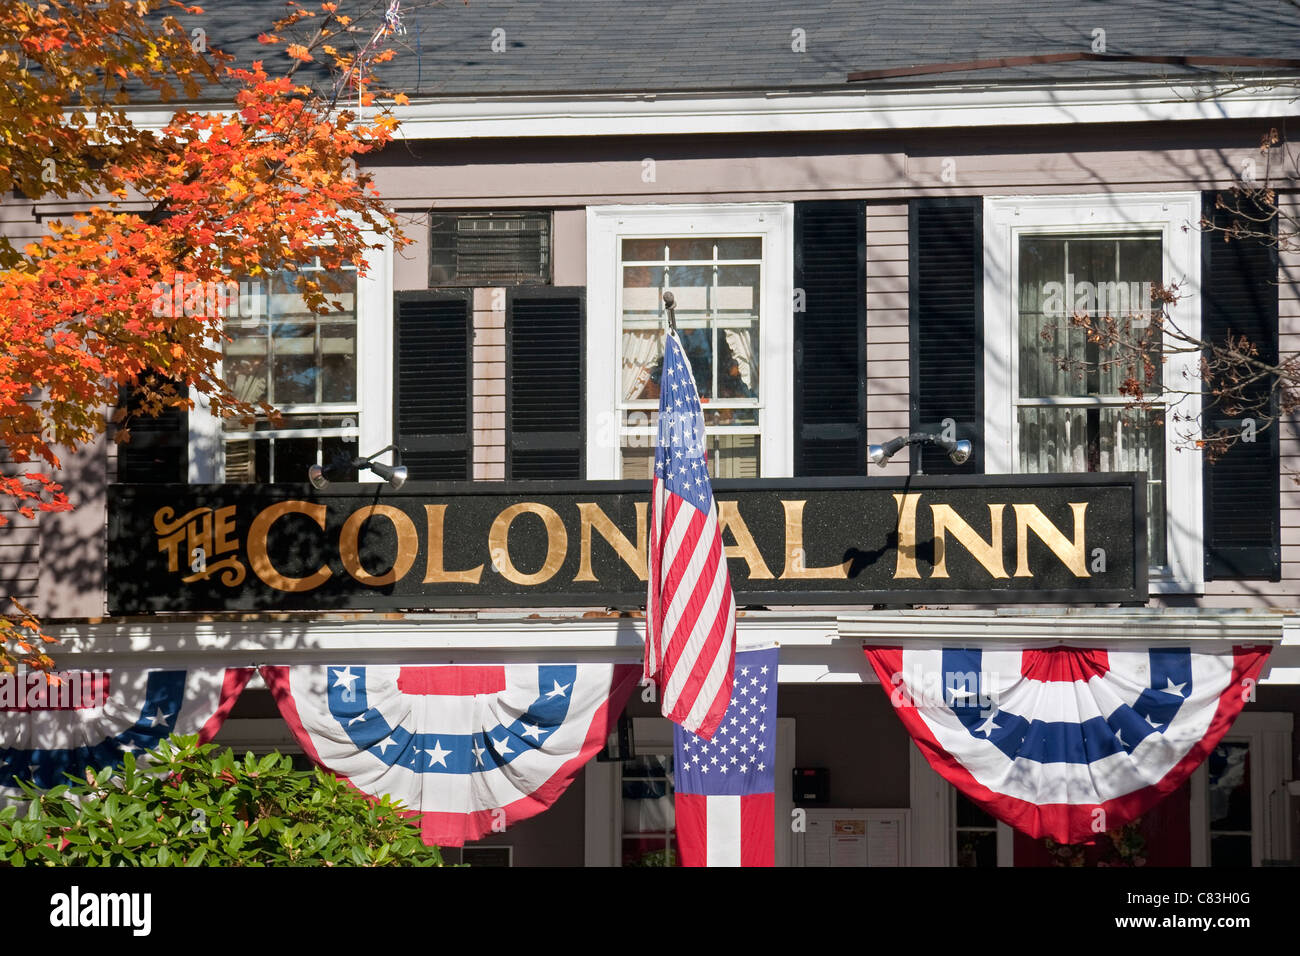 The Colonial Inn con decoraciones de estrellas y rayas, Concord, Massachusetts, Estados Unidos Foto de stock